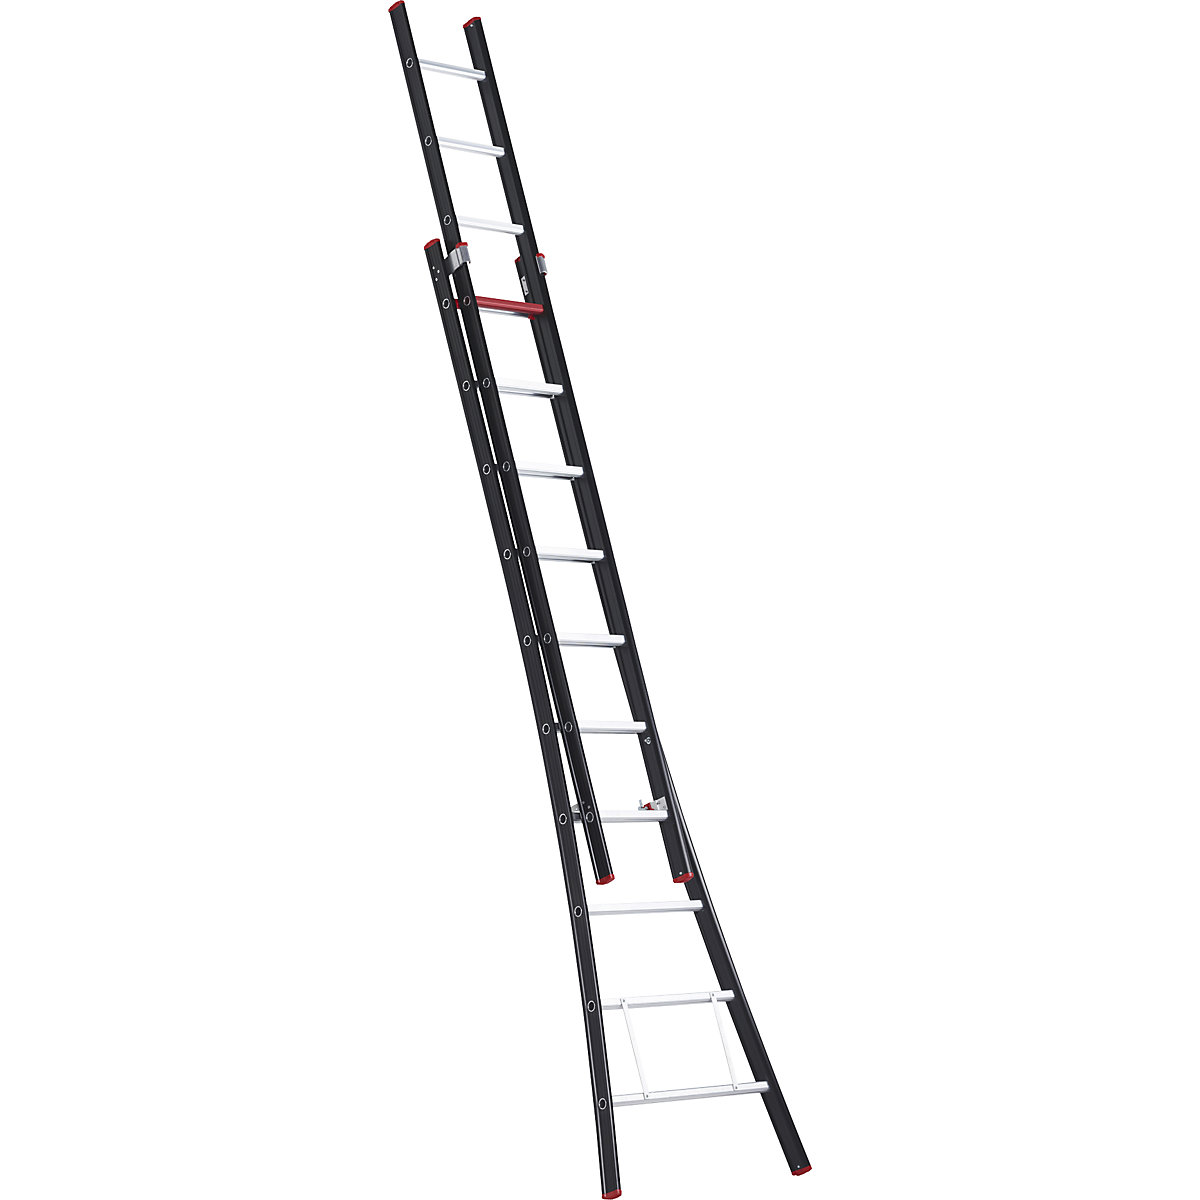 Altrex – Push-up ladder, 2 part, extendable